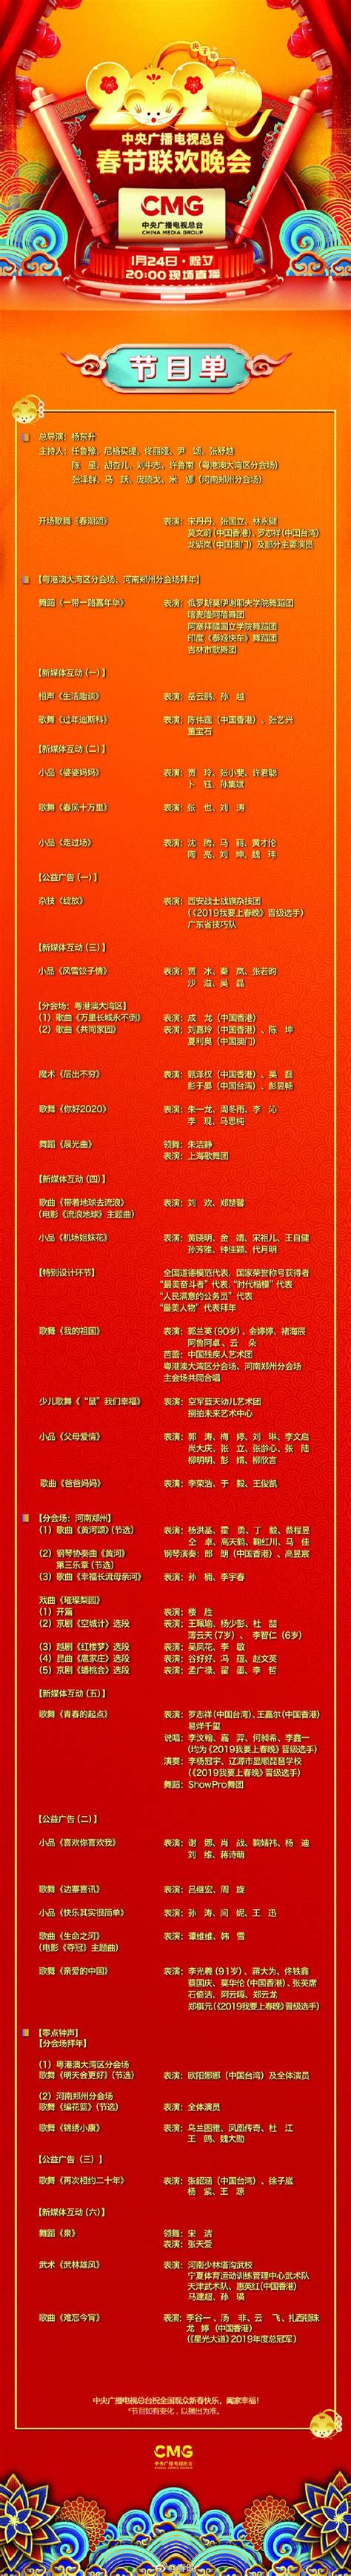 Цагаан сарын гала тоглолт дөрөв дэх бэлтгэлээ хийв - mongol.china.com